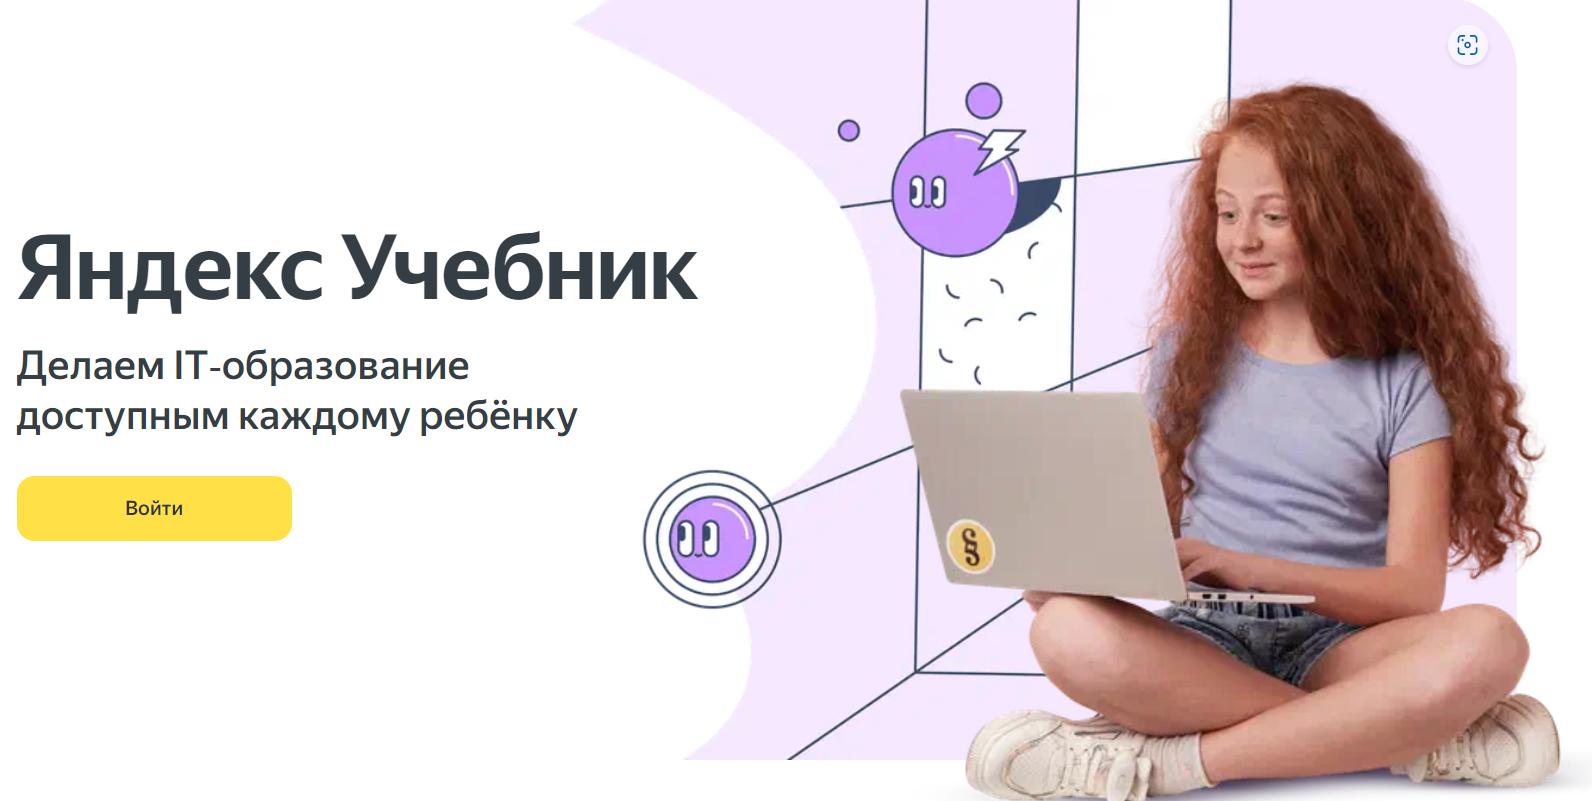 На образовательной платформе Яндекс Учебник появилась новая функция — «Объясни термин»..